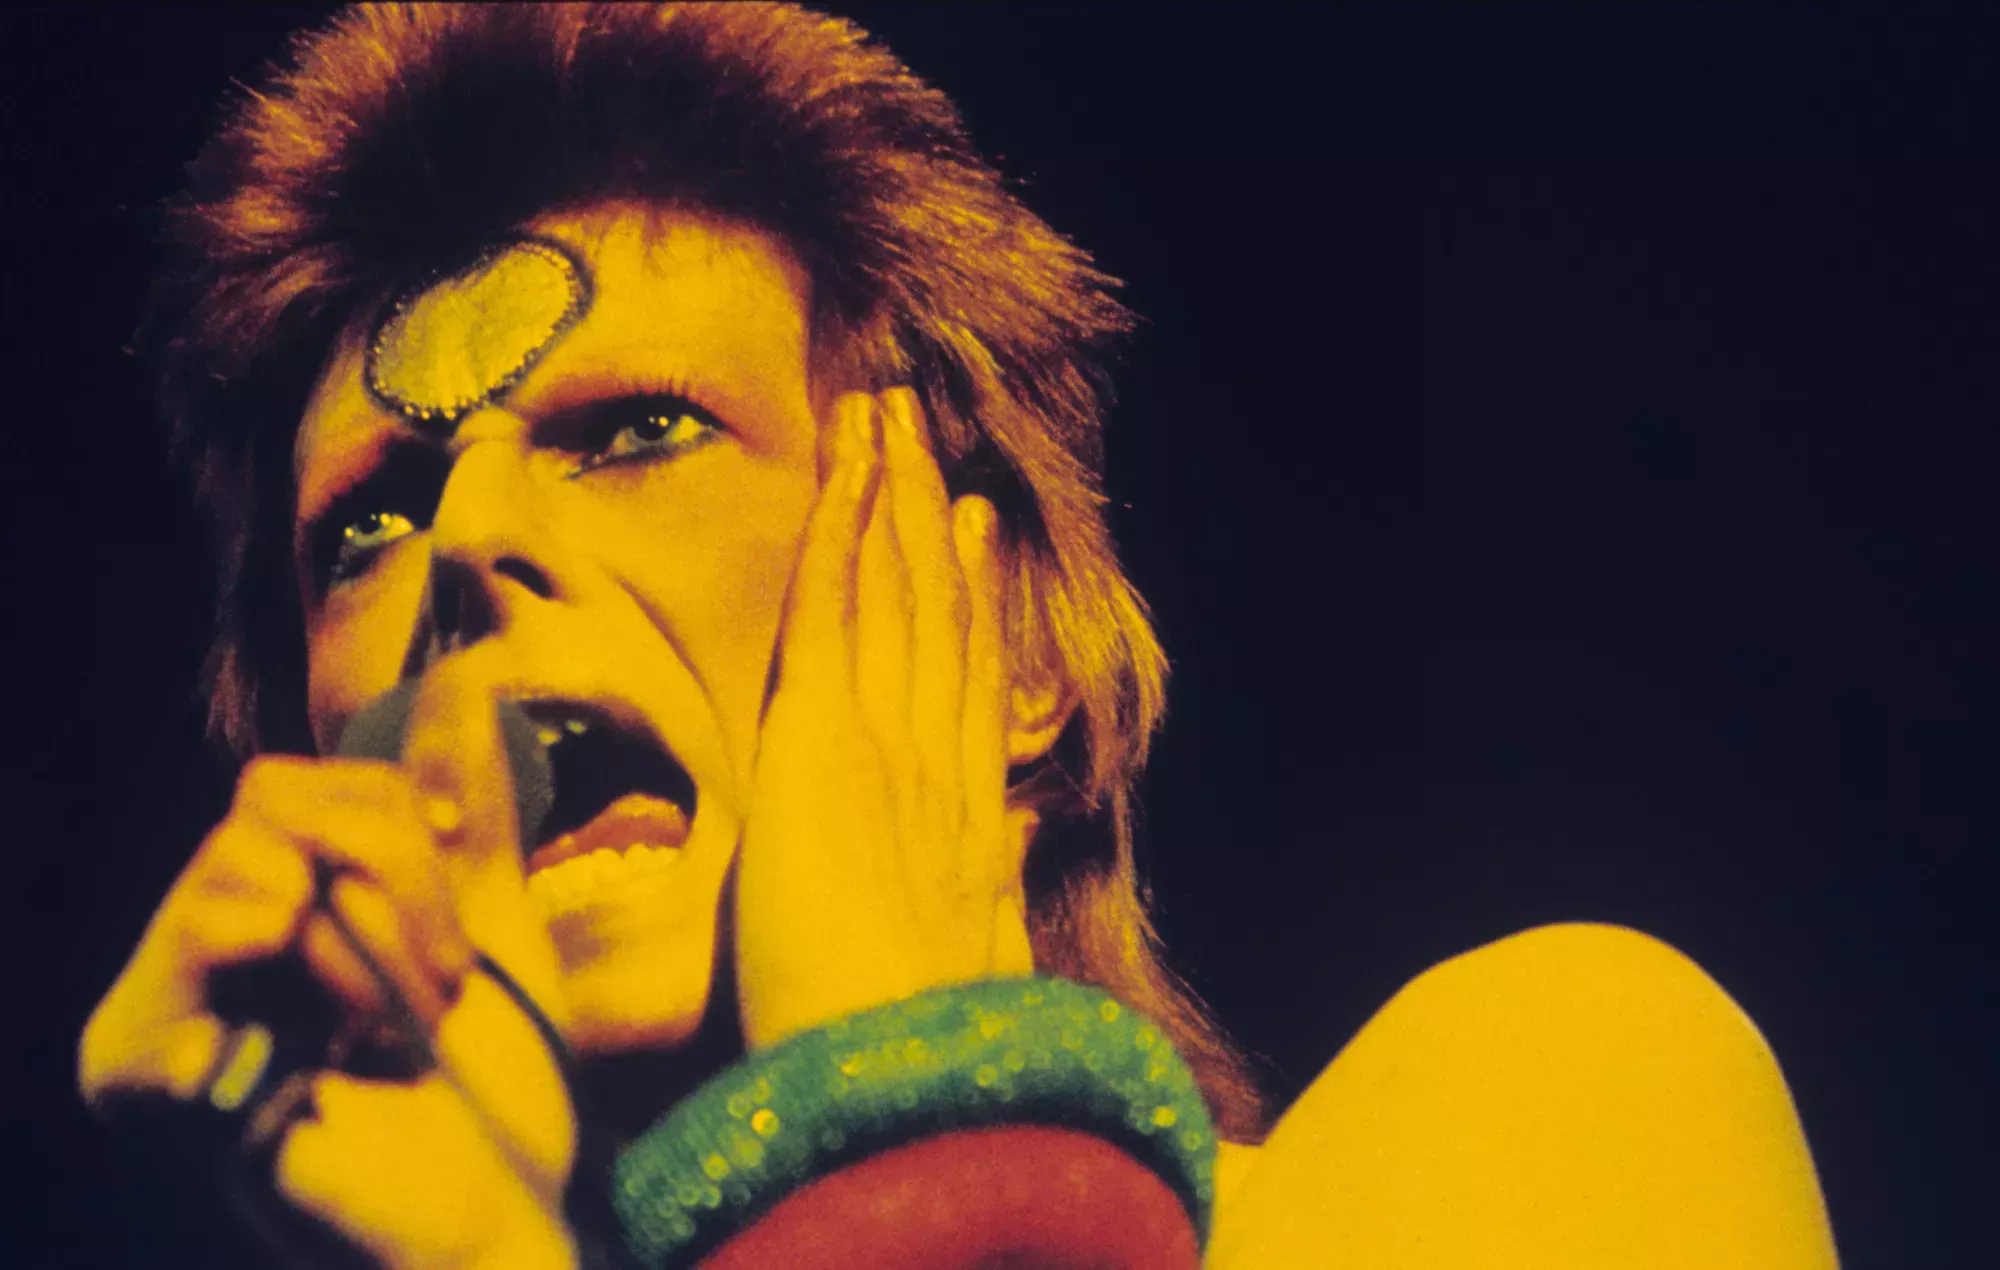 Subastan una partitura manuscrita de David Bowie valorada en 100.000 libras